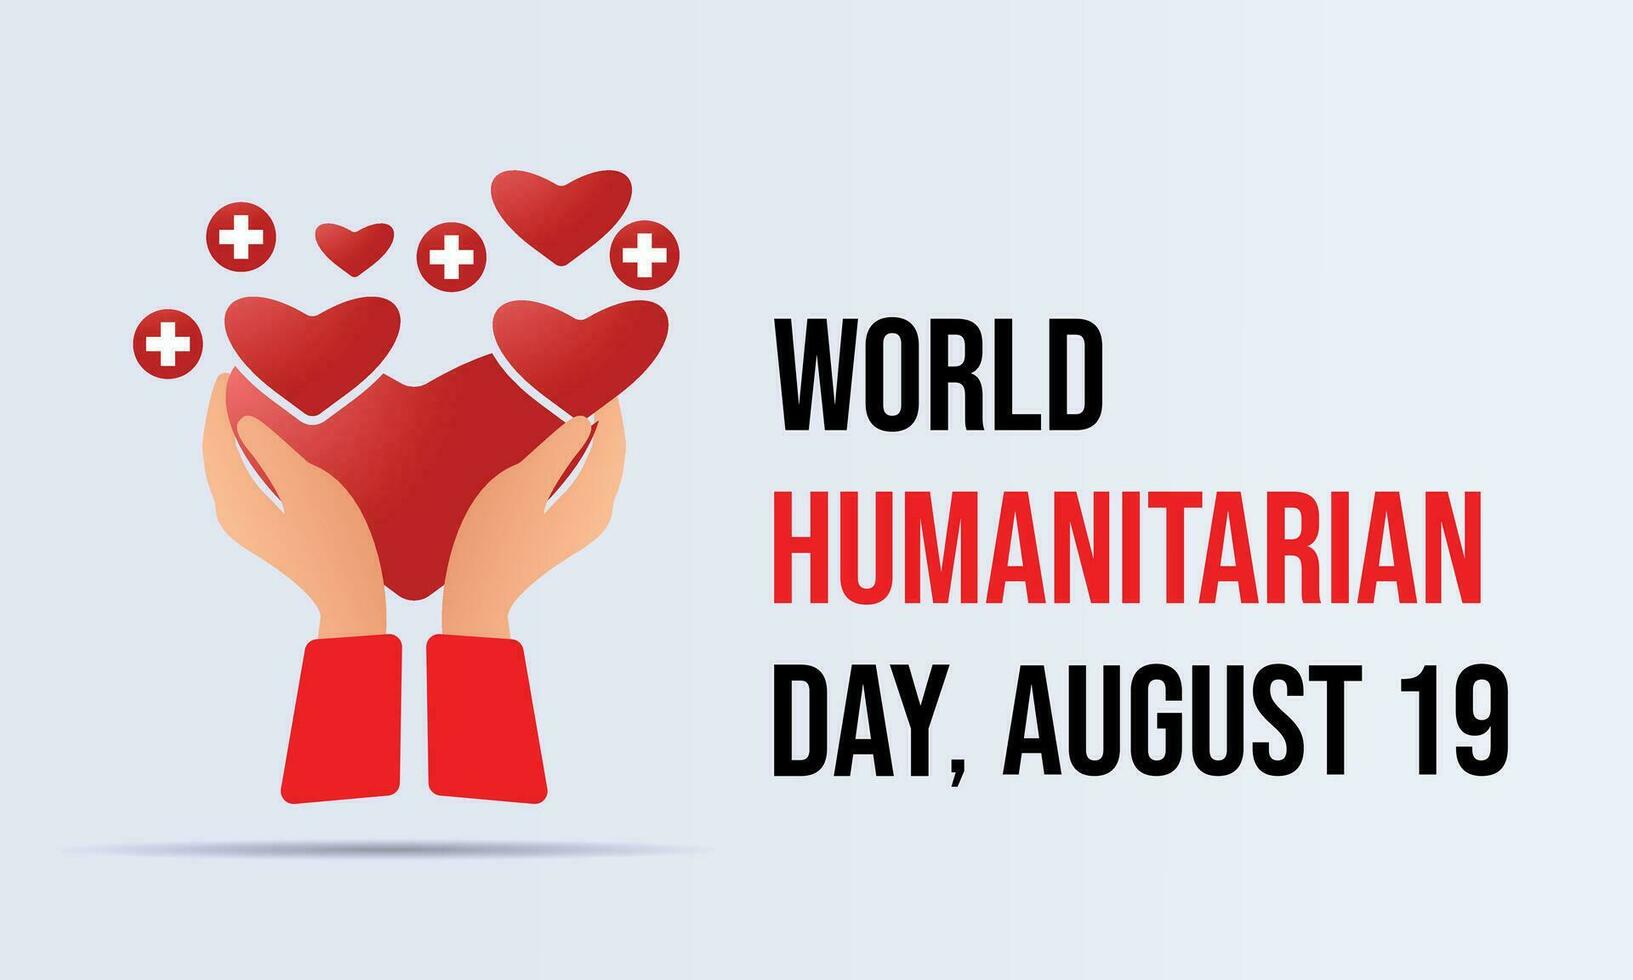 mondo umanitario giorno osservato ogni anno su agosto 19.banner manifesto design modello. vettore